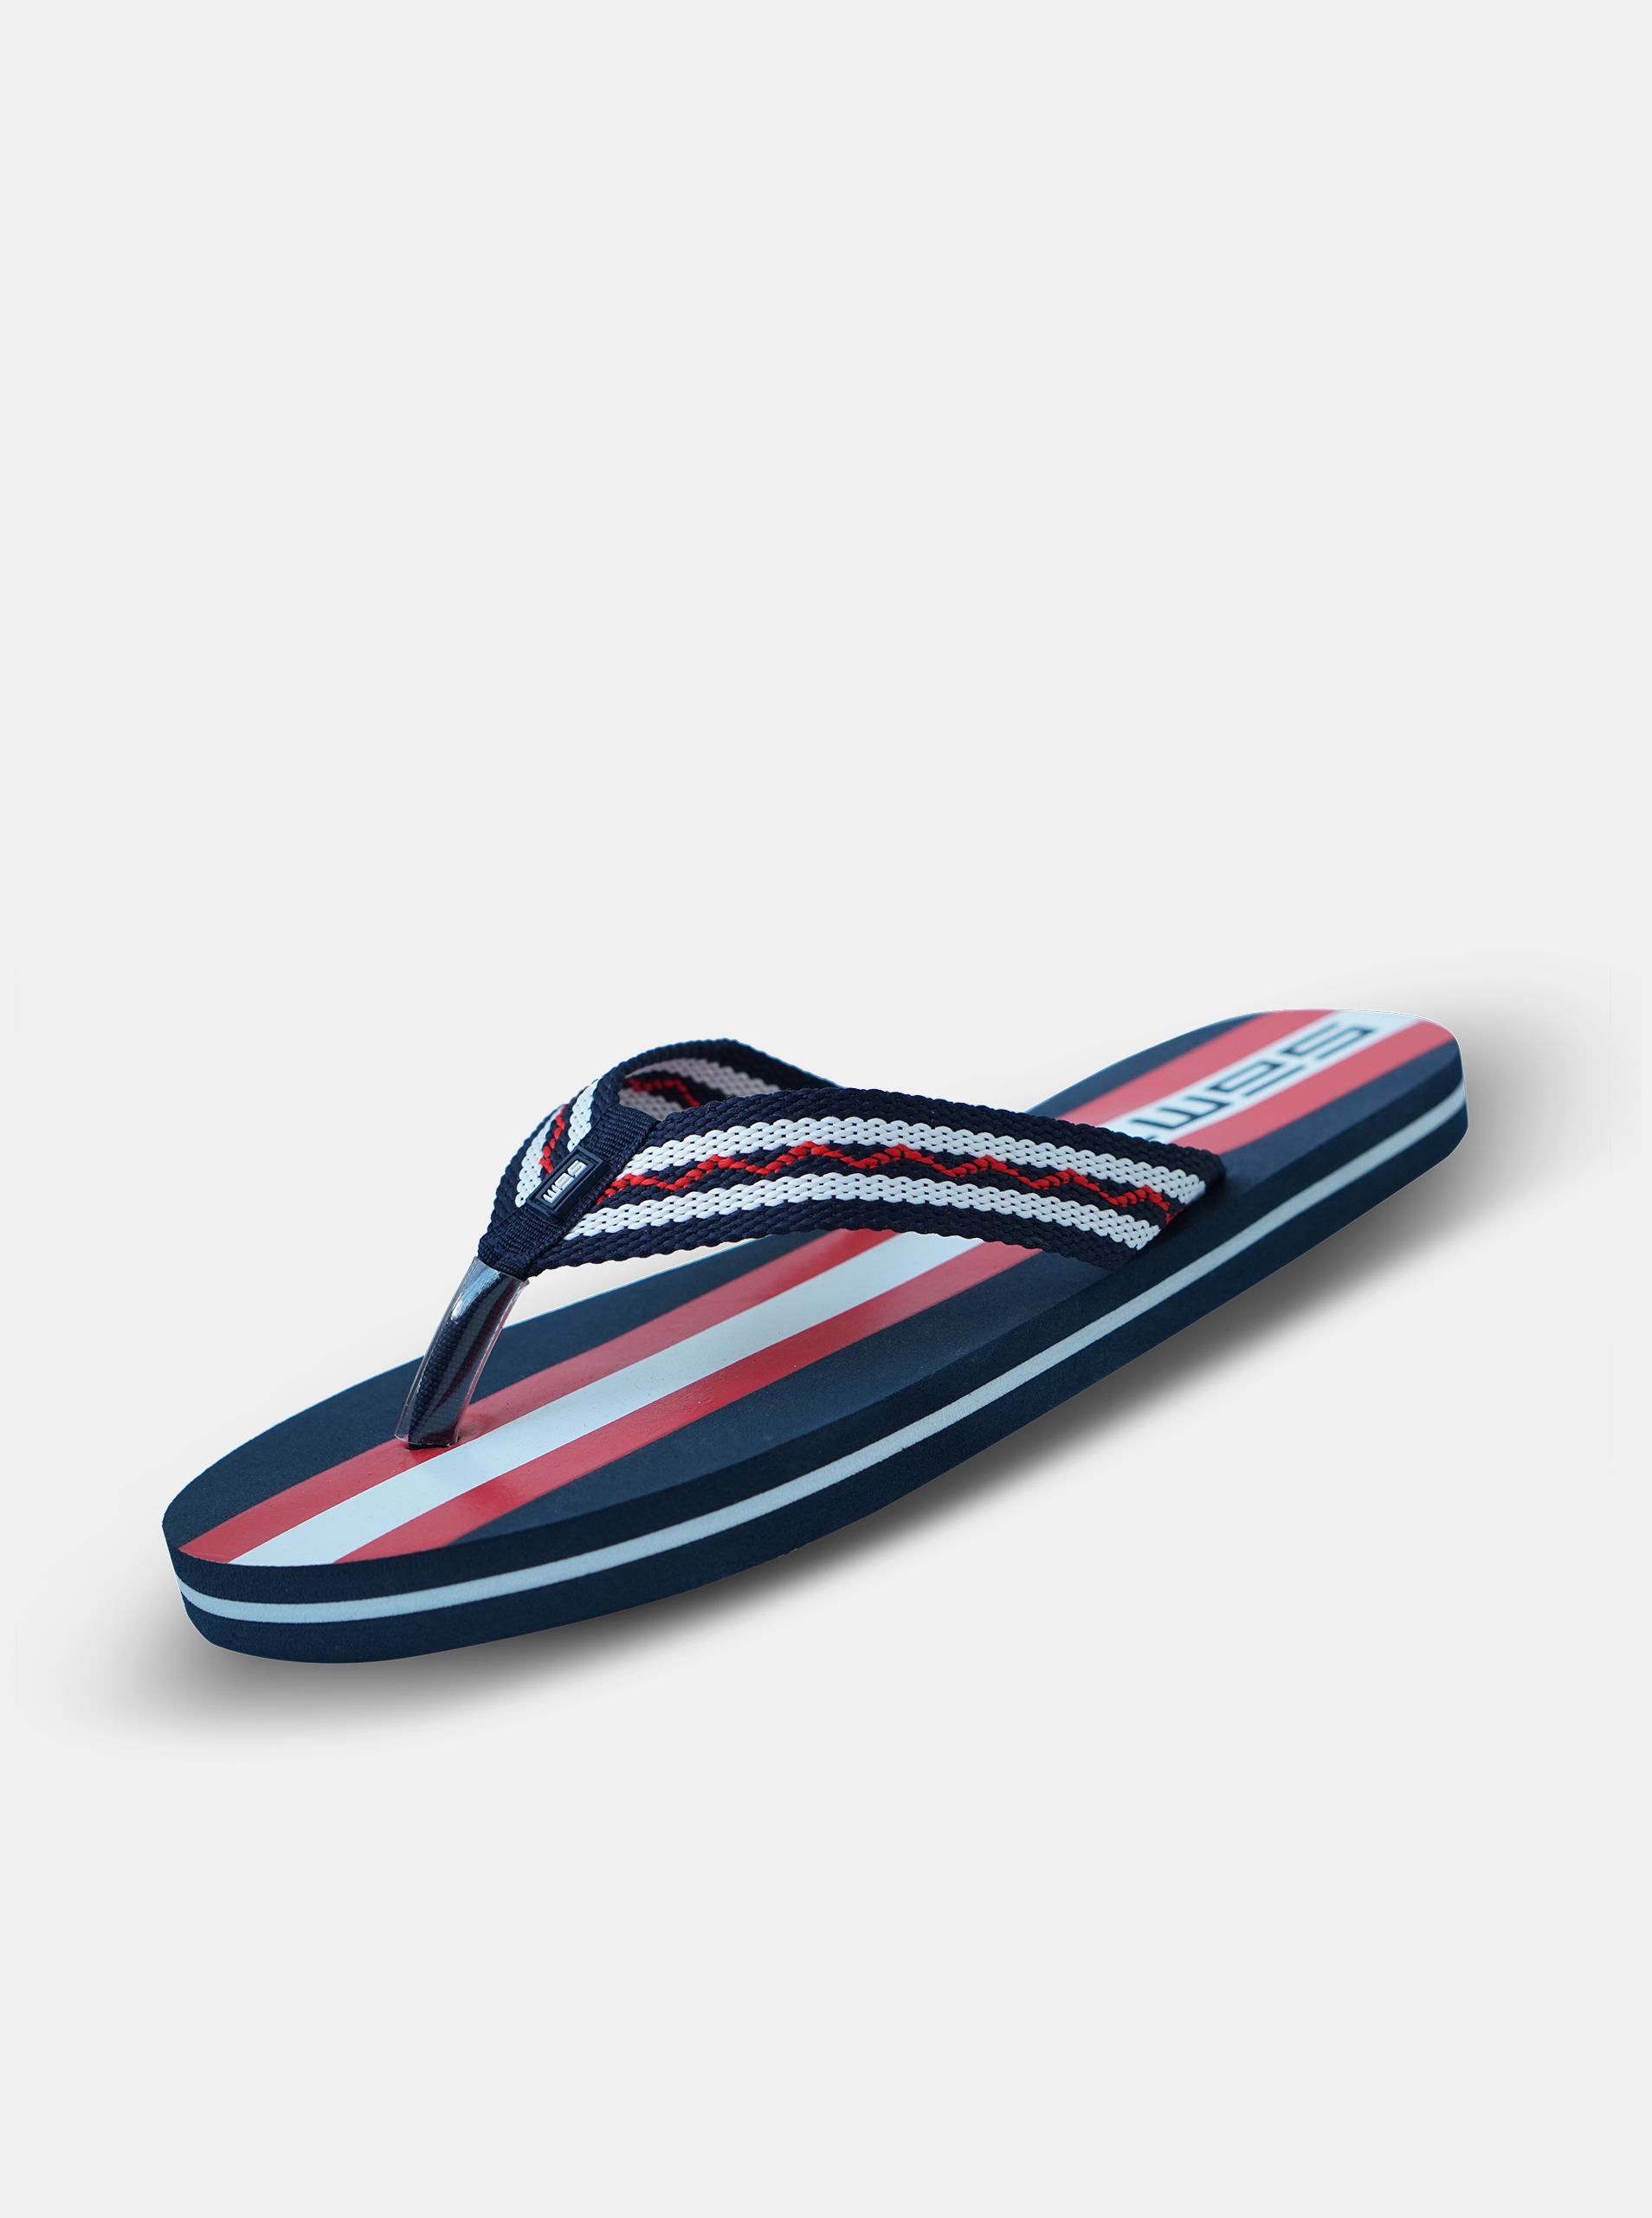 E-shop Sandále, papuče pre mužov SAM 73 - modrá, červená